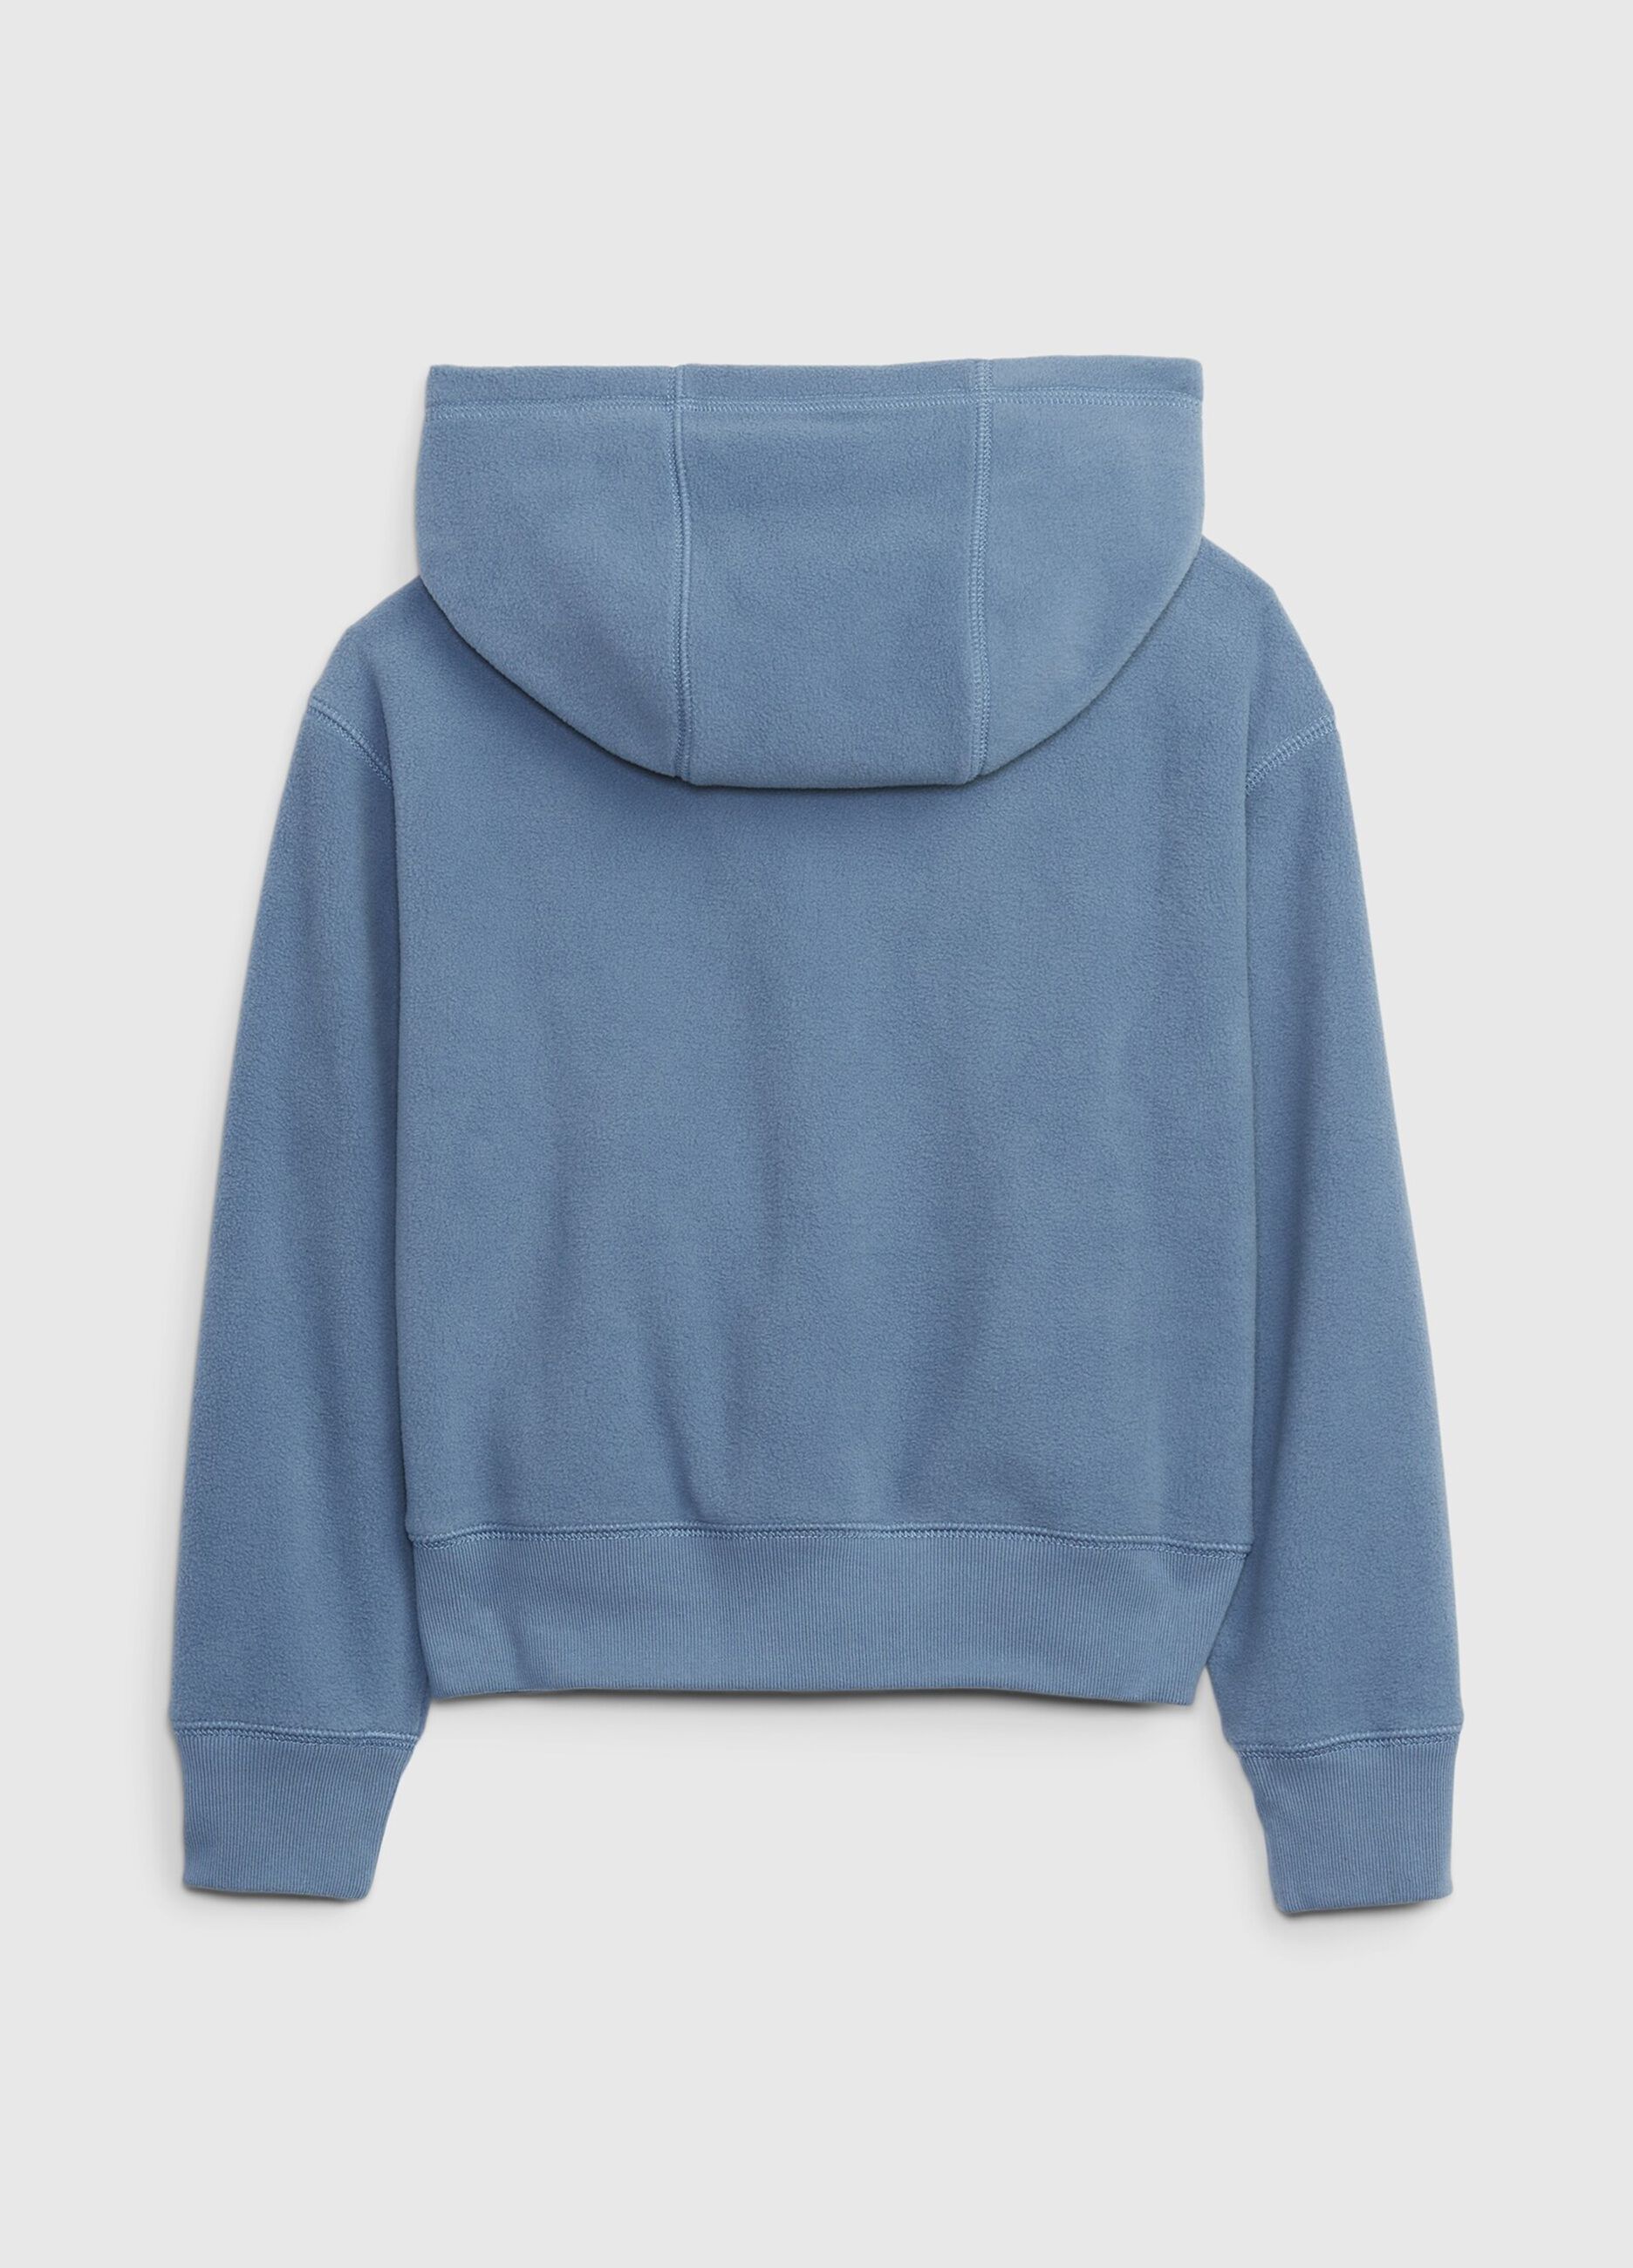 Fleece full-zip sweatshirt with hood